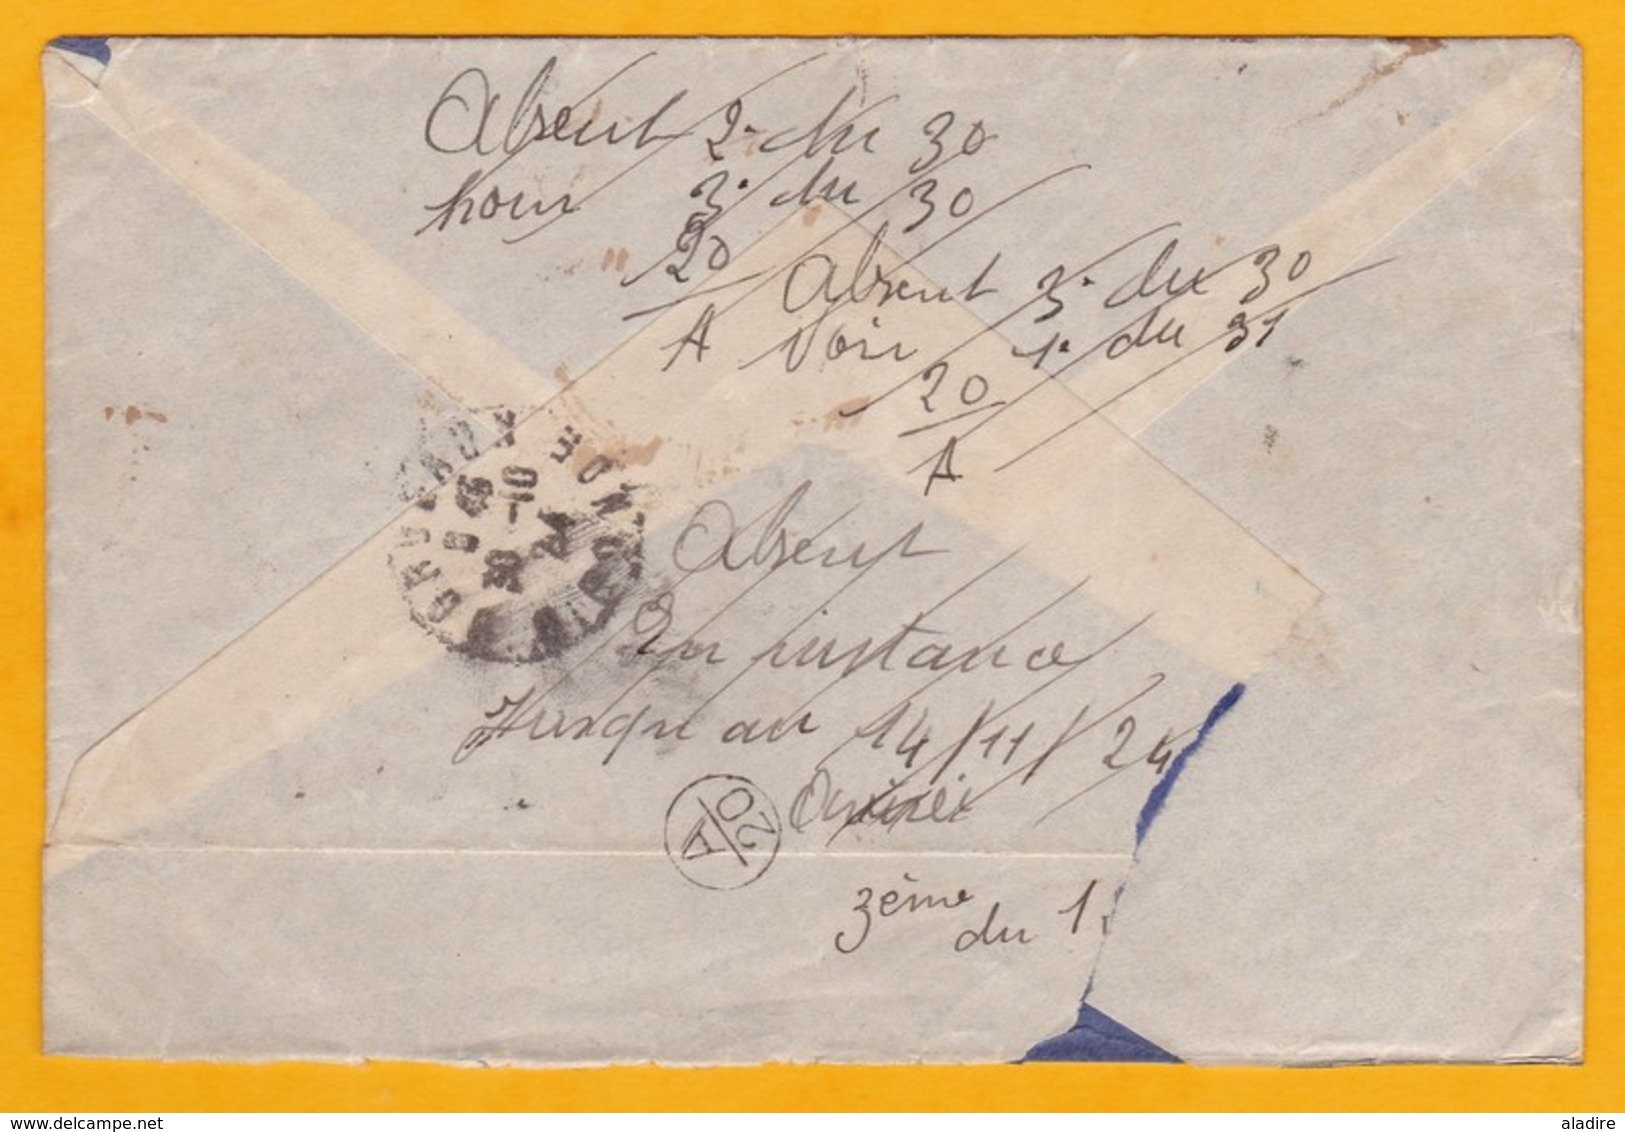 1924 - Lettre Recommandée De Cholon, Cochinchine Vers Bordeaux, France - Affrt 12 C - Cad Arrivée - Lettres & Documents